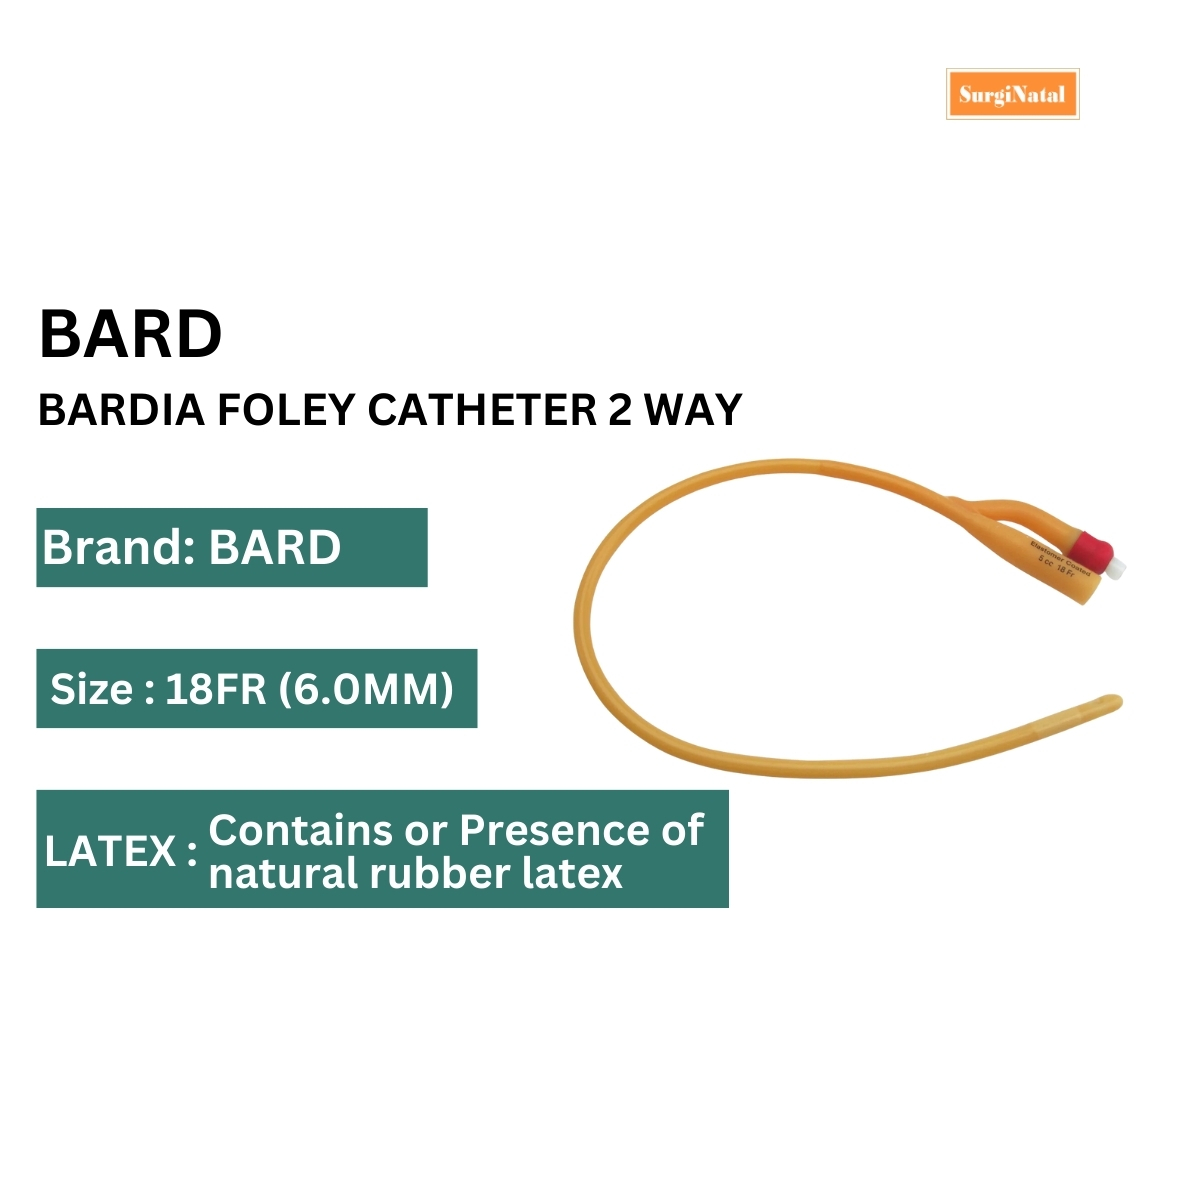 bardia foley catheter 2 way - 18fr (6.0mm)